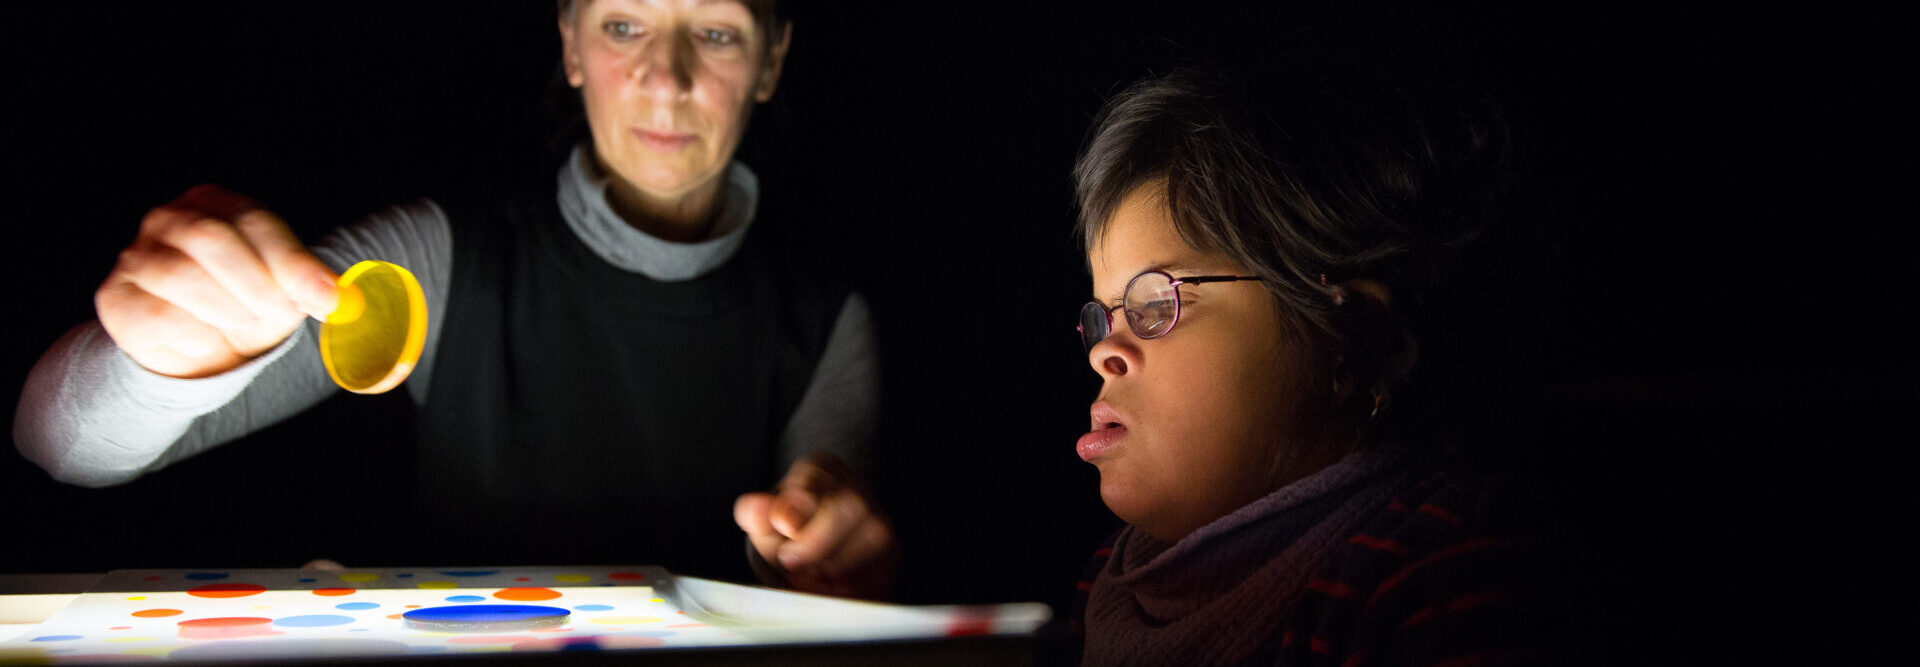 L'enseignant et l'enfant travaillent sur la boîte à lumière dans la pièce sombre. La fille à droite a l'air fascinée par les différents disques en plexiglas colorés sur la boîte à lumière. L'enseignant de gauche introduit un nouveau disque jaune dans le jeu.